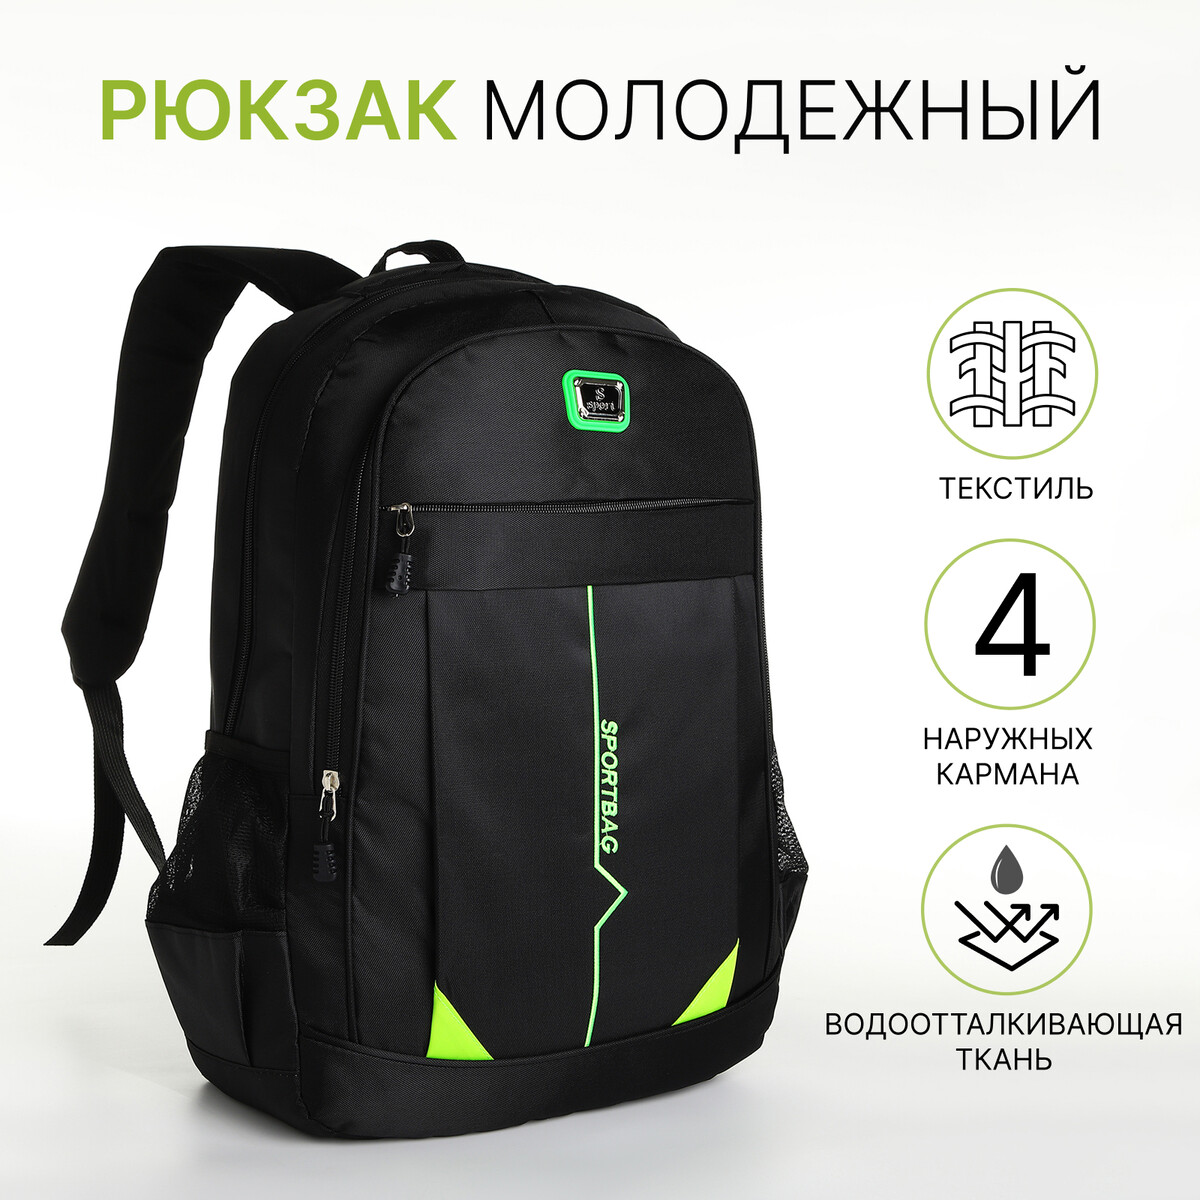 Рюкзак молодежный на молнии, 4 кармана, цвет черный/зеленый рюкзак молодежный из текстиля на молнии 4 кармана зеленый